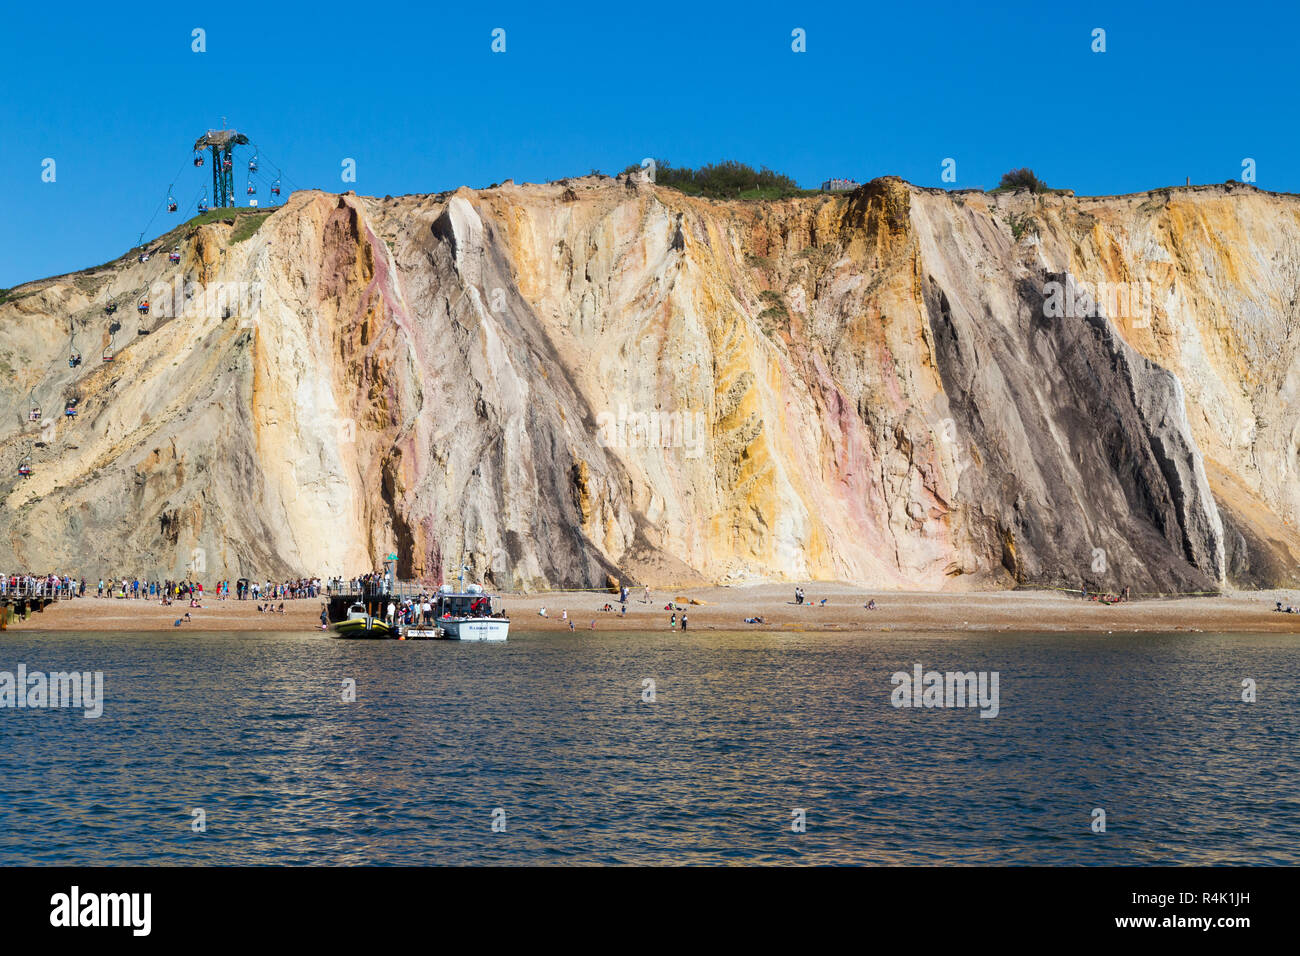 Famoso por capas multicolores arenas de la playa de los acantilados de la Bahía de Alum acantilados. Los diferentes colores de arena puede verse claramente. Las agujas. La Isla de Wight. Reino Unido (98) Foto de stock